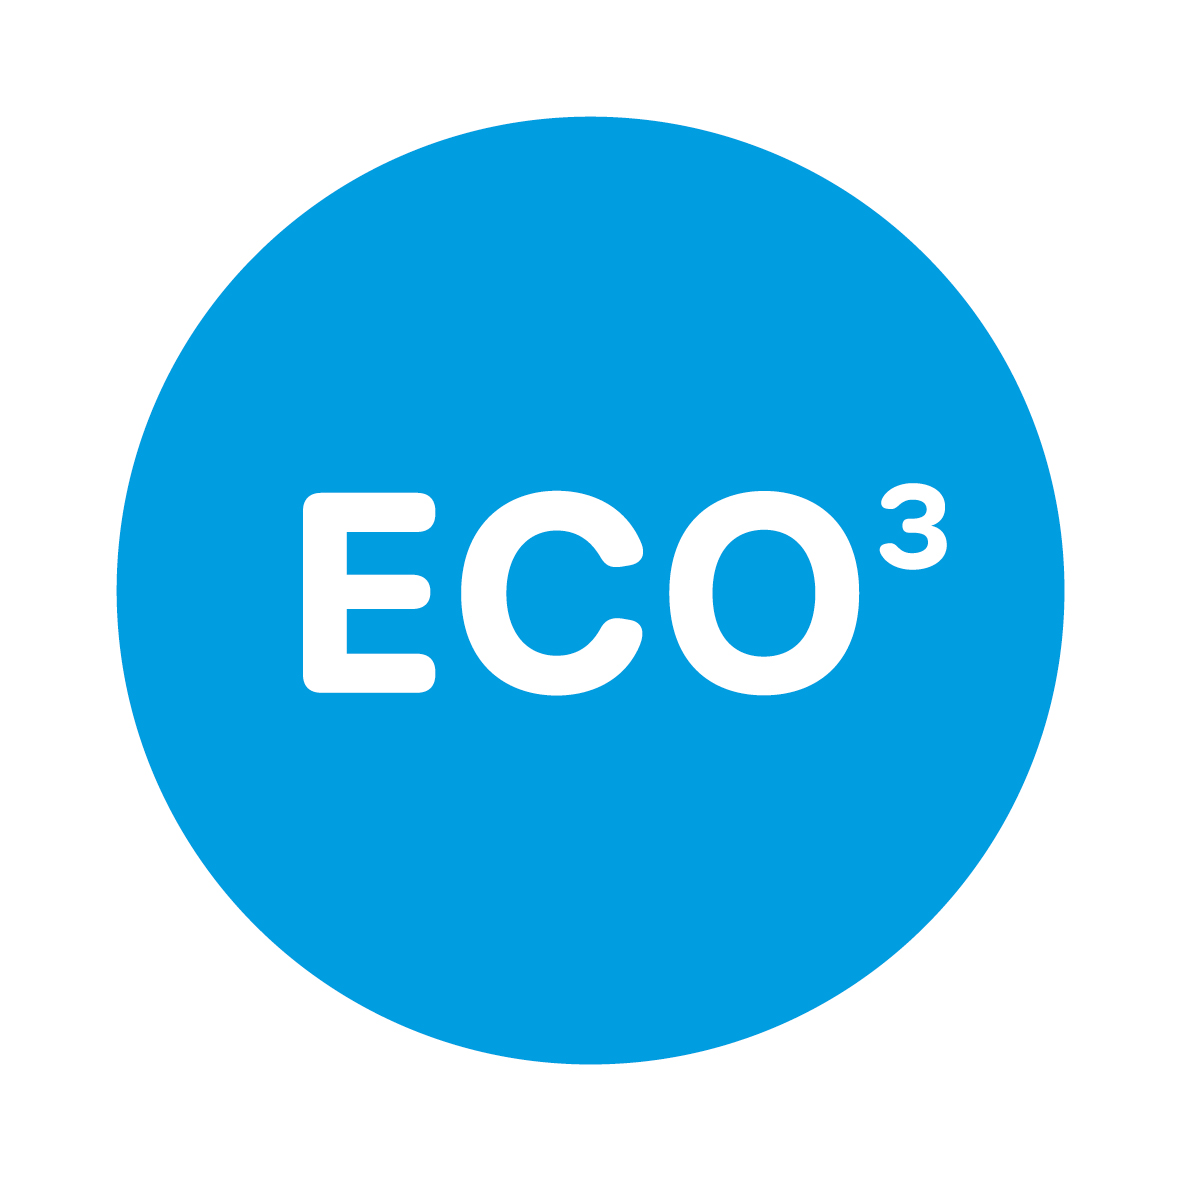 ECo³ Garantie der Wasser 3.0 gGmbH: Abfälle vermeiden, Abfälle wiederverwerten, Wasser sparen